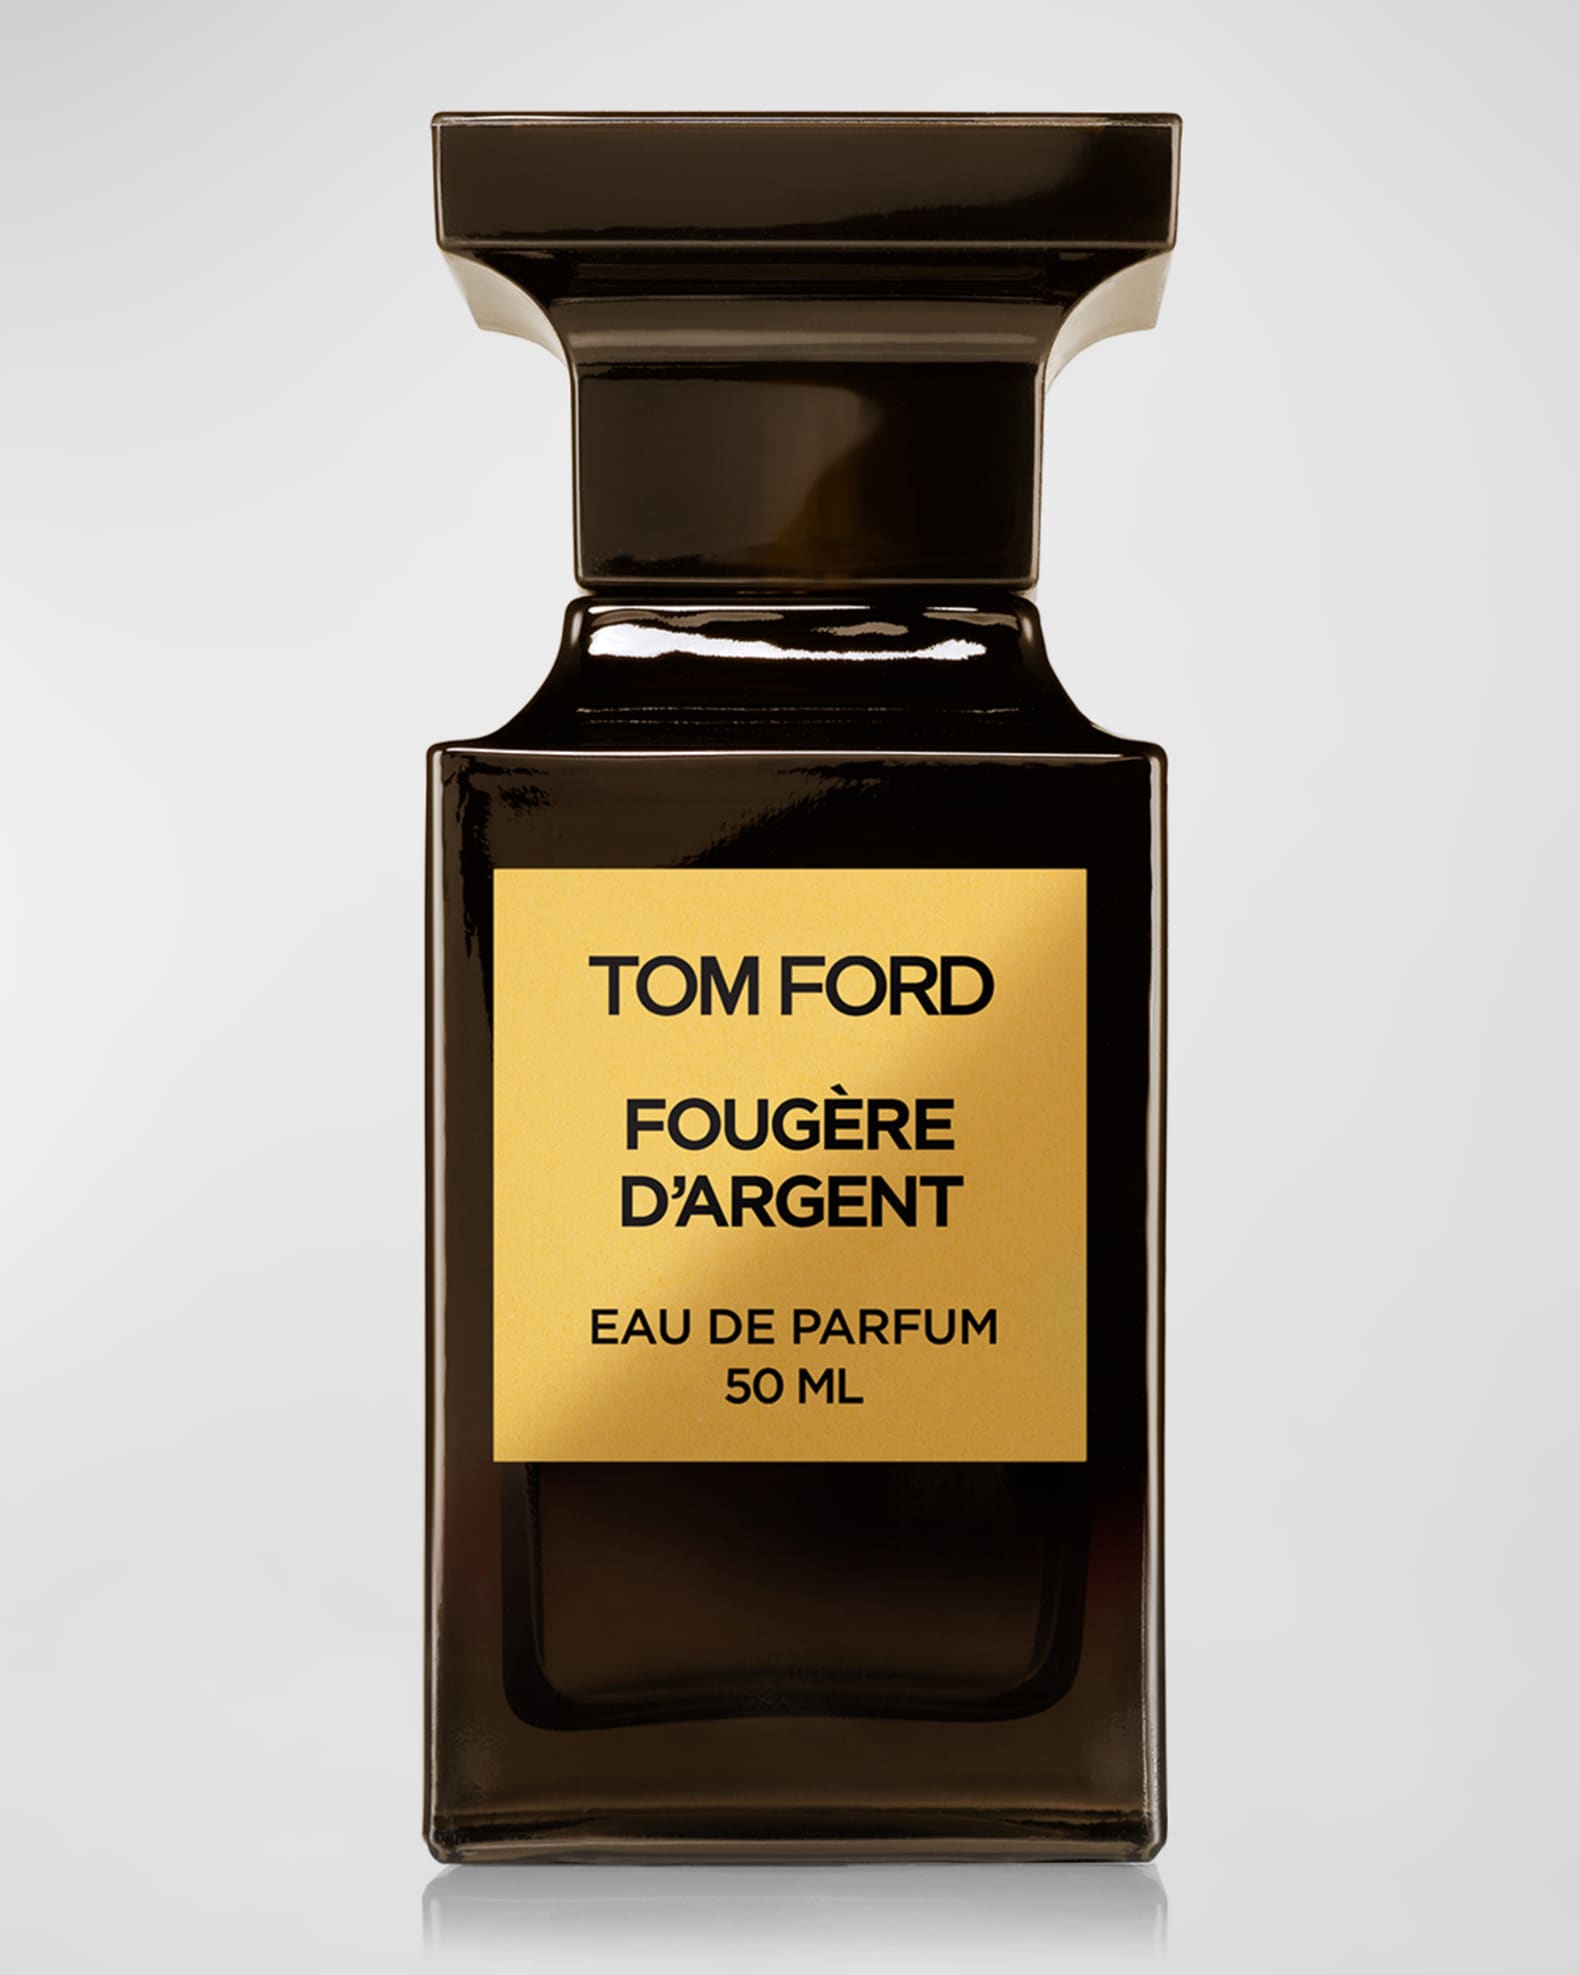 TOM FORD Private Blend Fougere D'Argent Eau de Parfum, 1.7 oz.